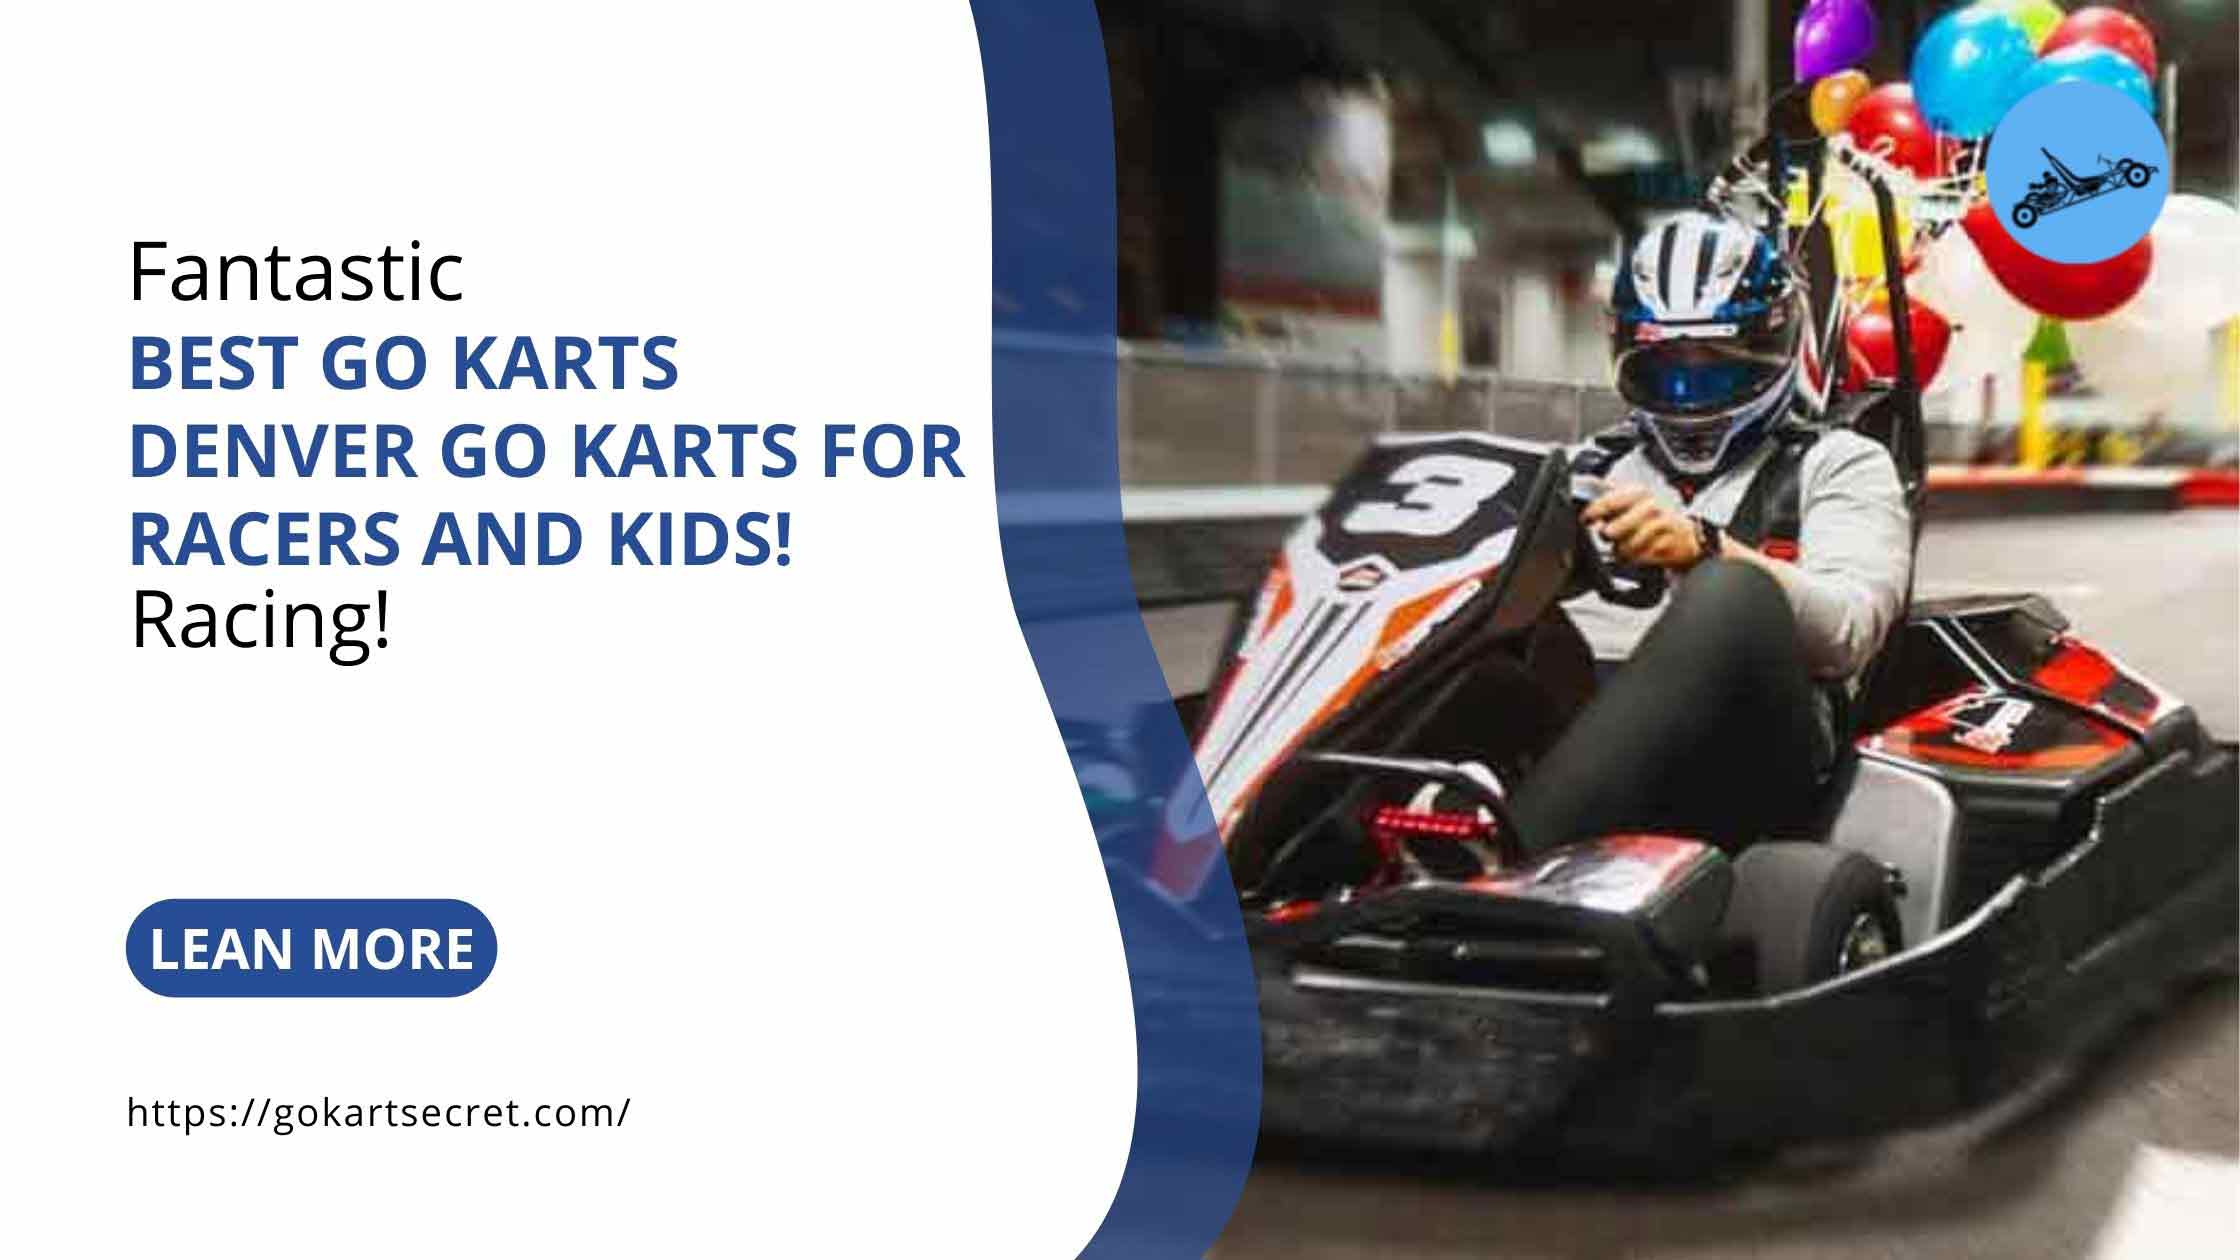 6 Best Go Karts Denver; Go Karts For Racers And Kids